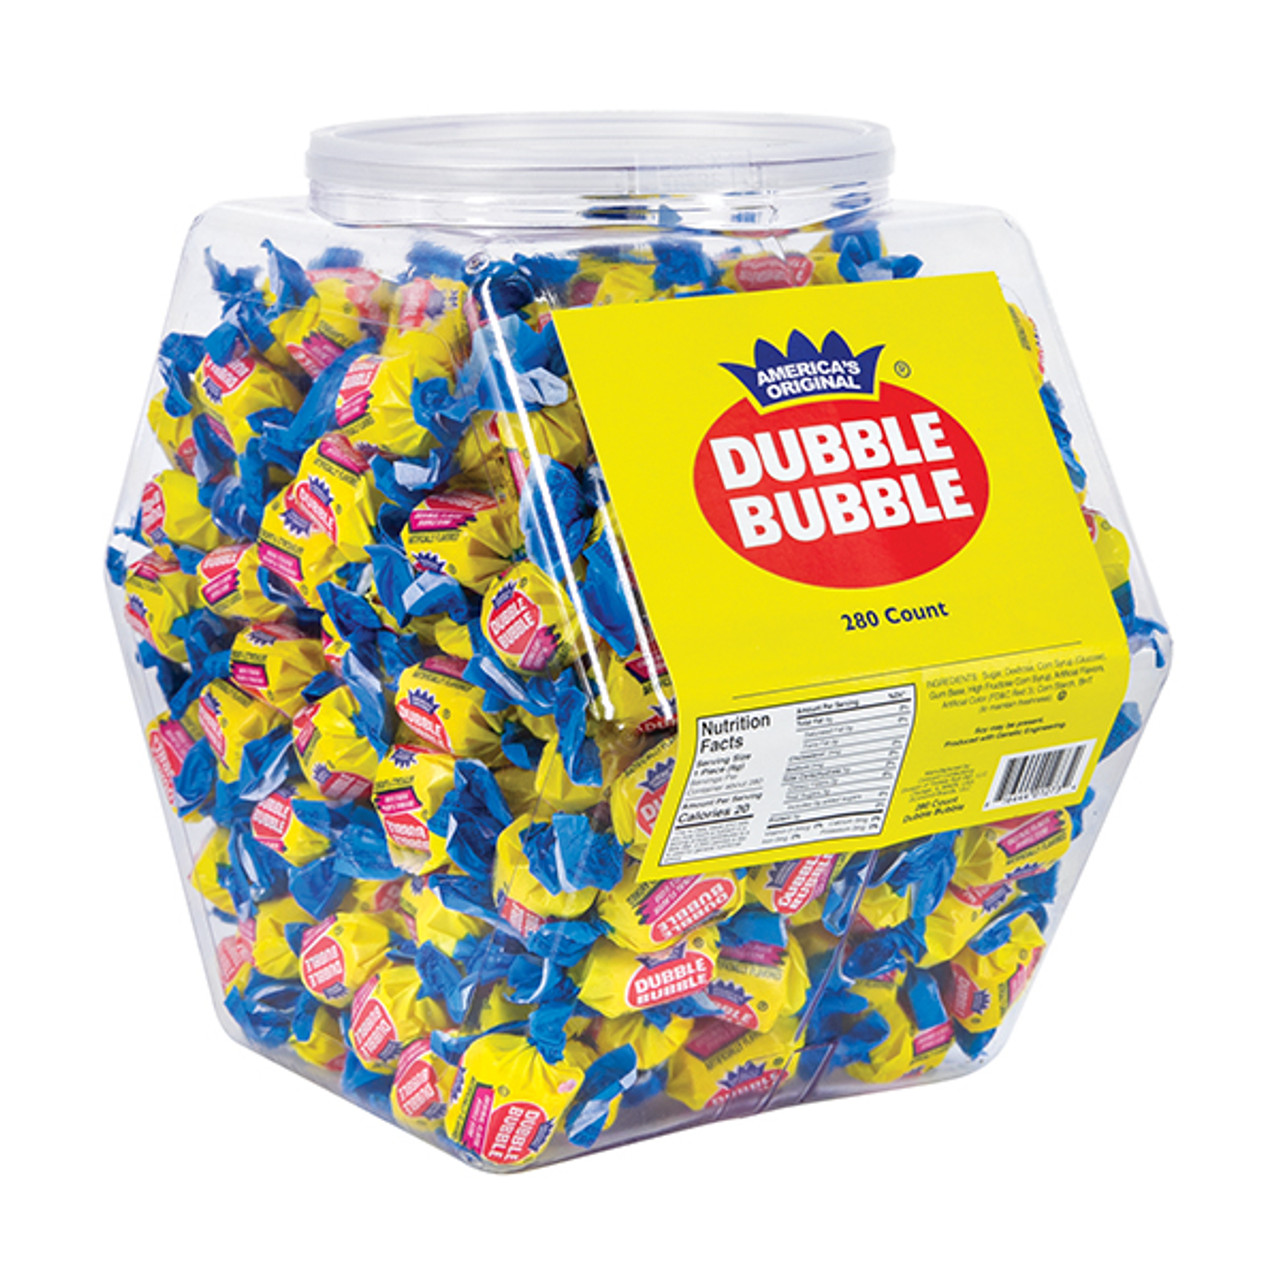 Dubble Bubble Bubble Gum - Bulk Display Tub - 280ct